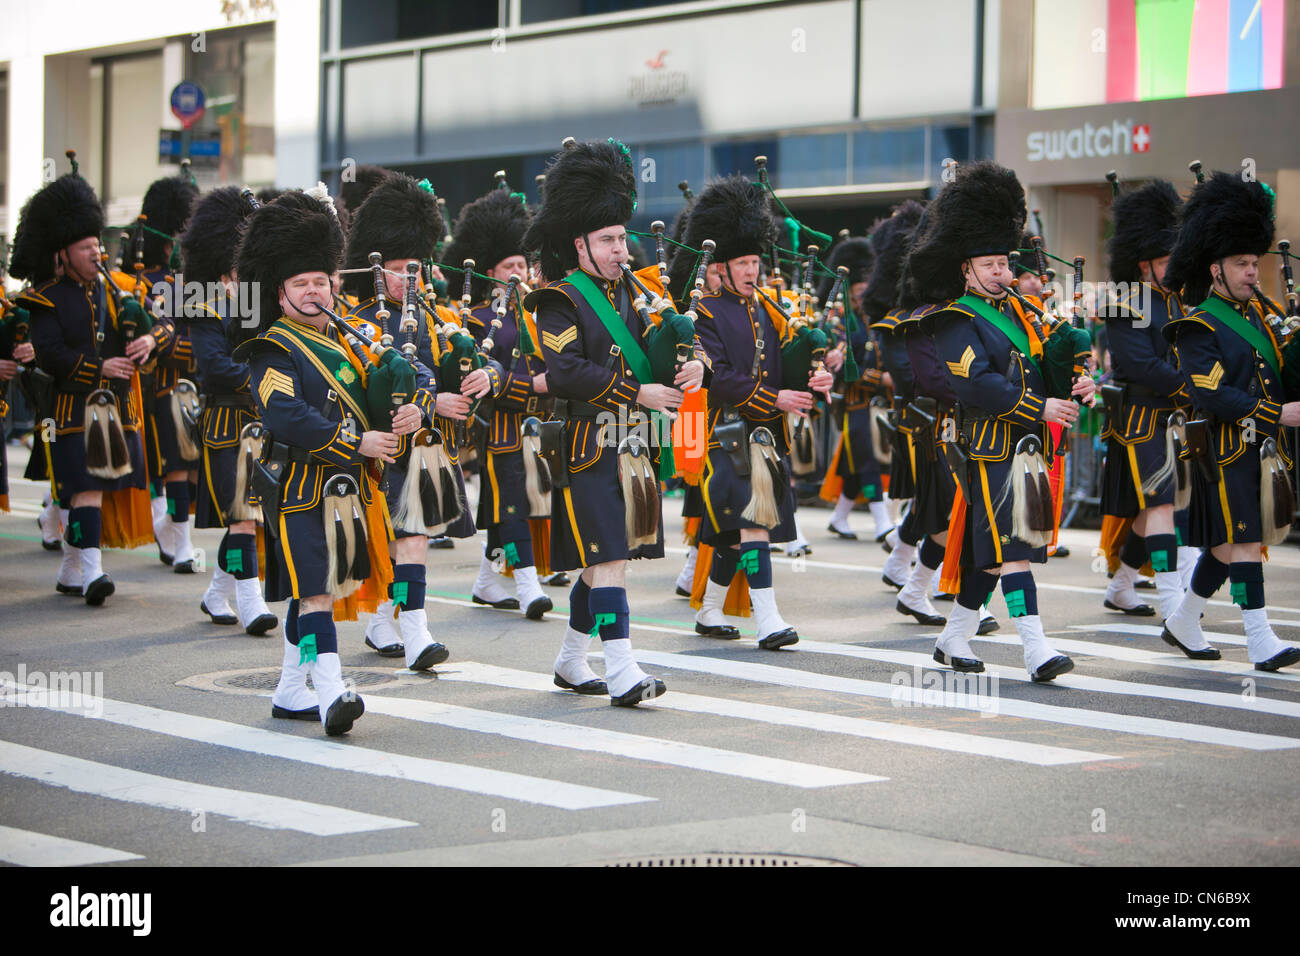 St. Patrick's Day parade New York 2012 Stock Photo